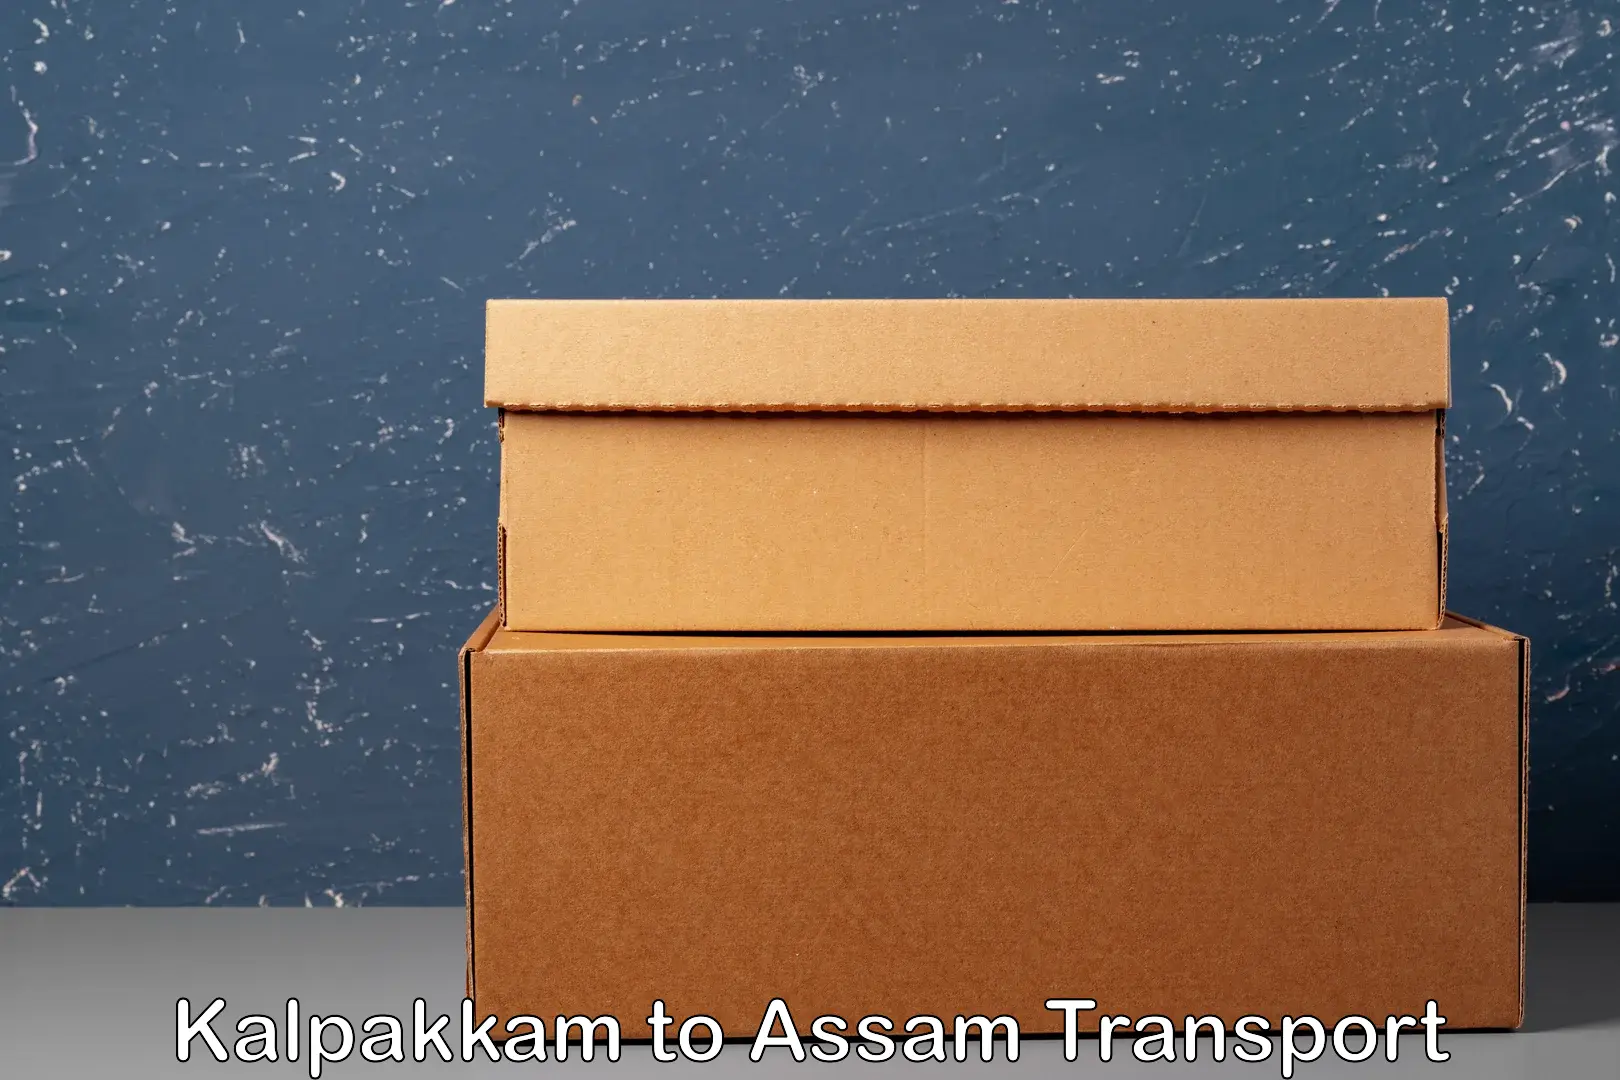 Daily parcel service transport Kalpakkam to Assam